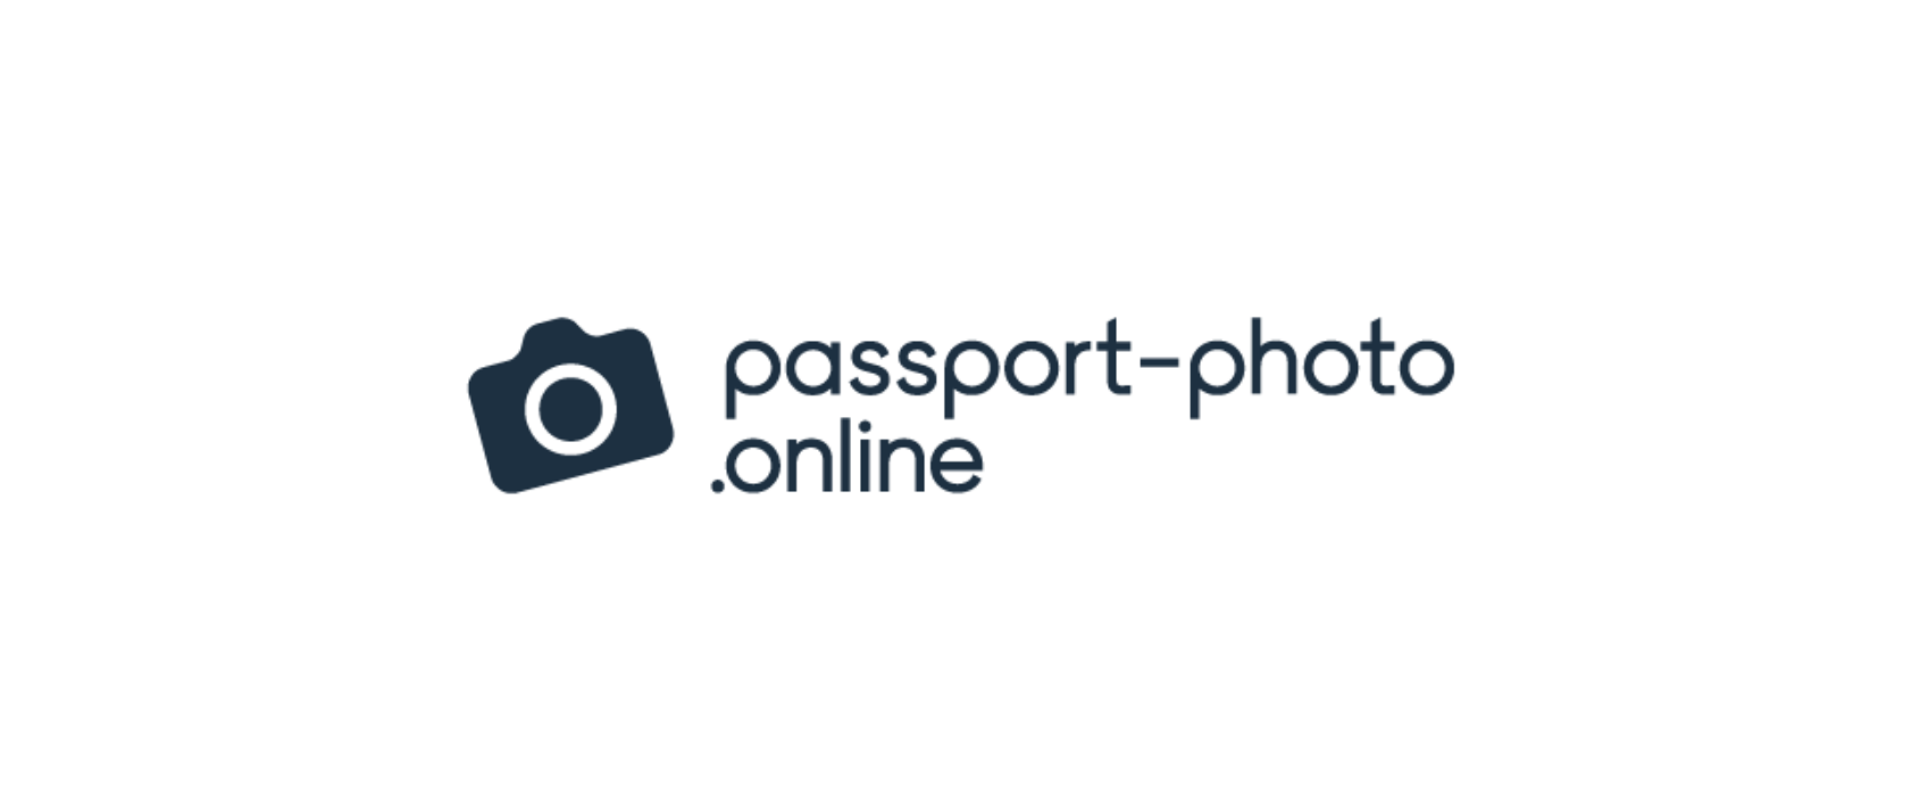 Czarna ikona aparatu fotograficznego oraz napis passport-photo.online